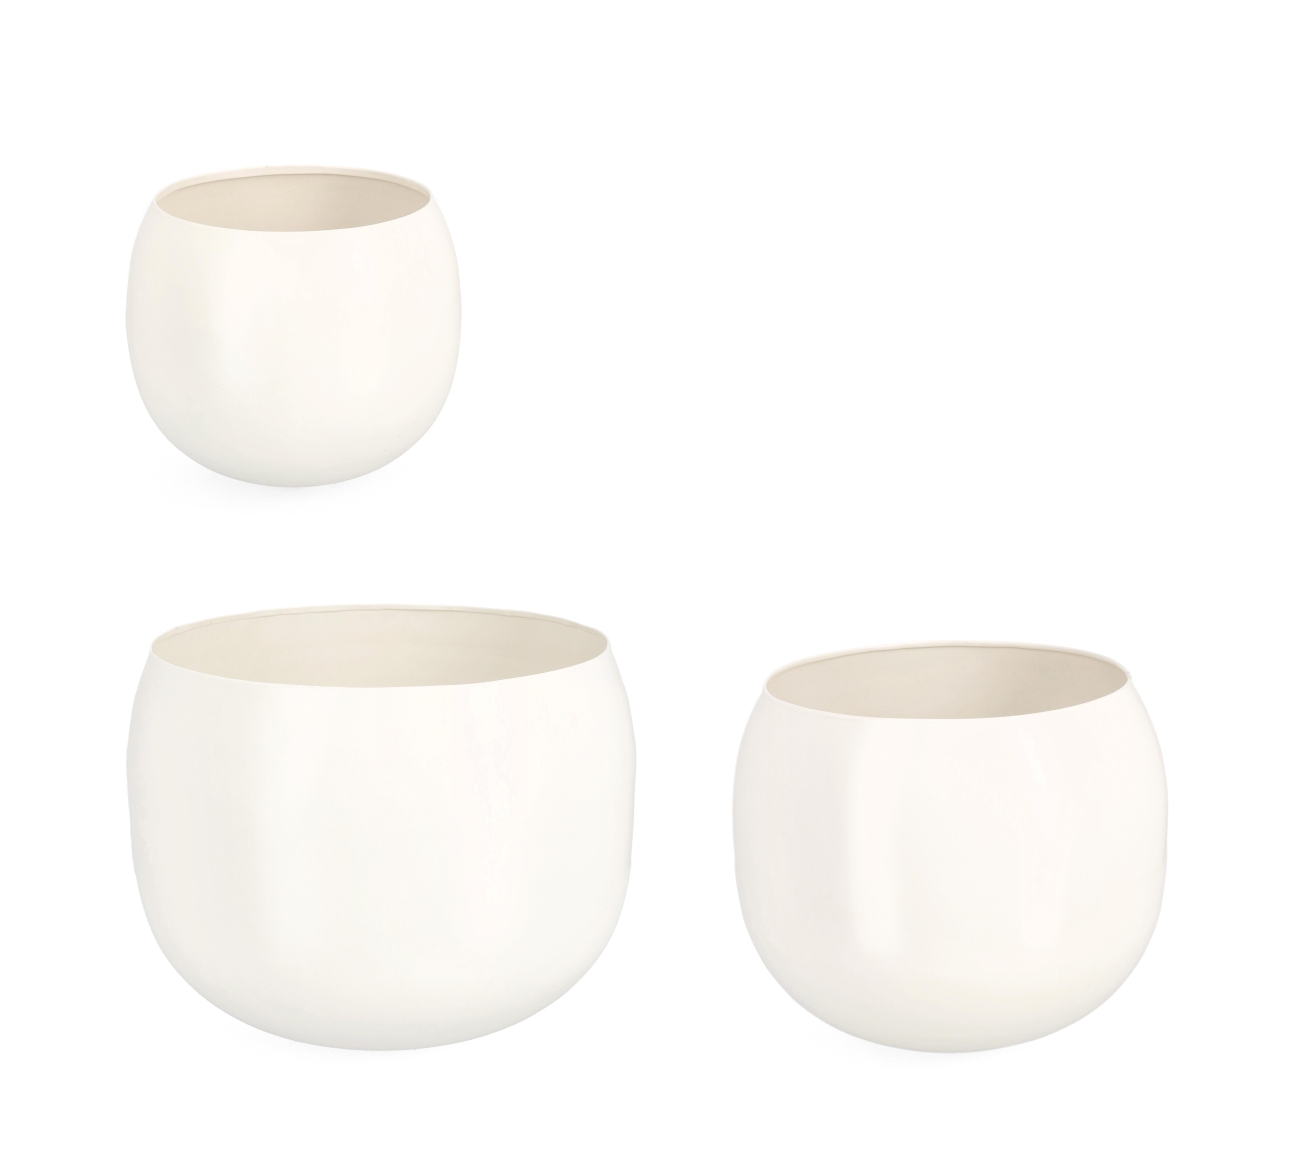 Die Outdoor Vase Keyra überzeugt mit ihrem modernen Design. Gefertigt wurde sie aus Metall, welches einen weißen Farbton besitzt. Die Vase besteht aus einem 3er Set in unterschiedlichen Größen.